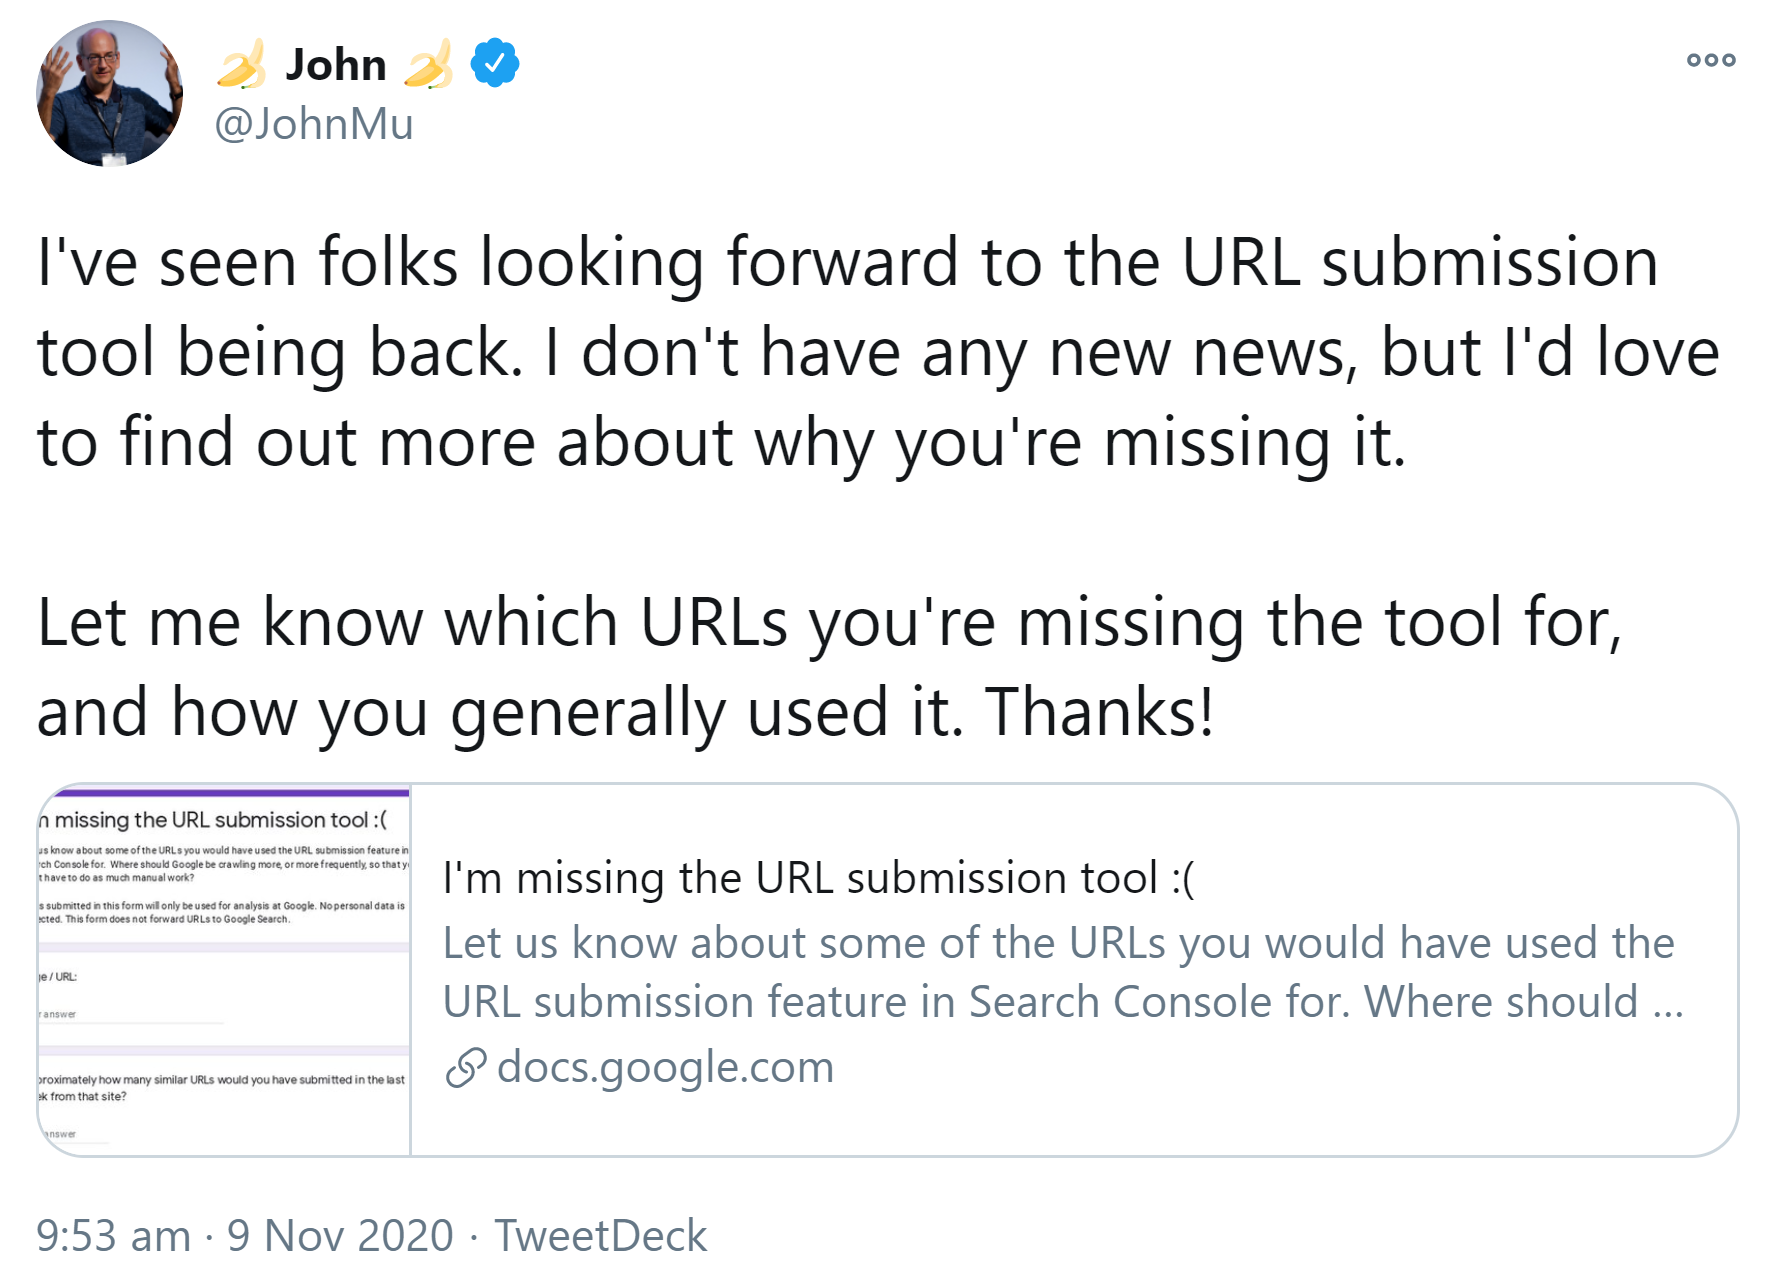 Google startet Umfrage zur Nutzung des URL Submission Tools